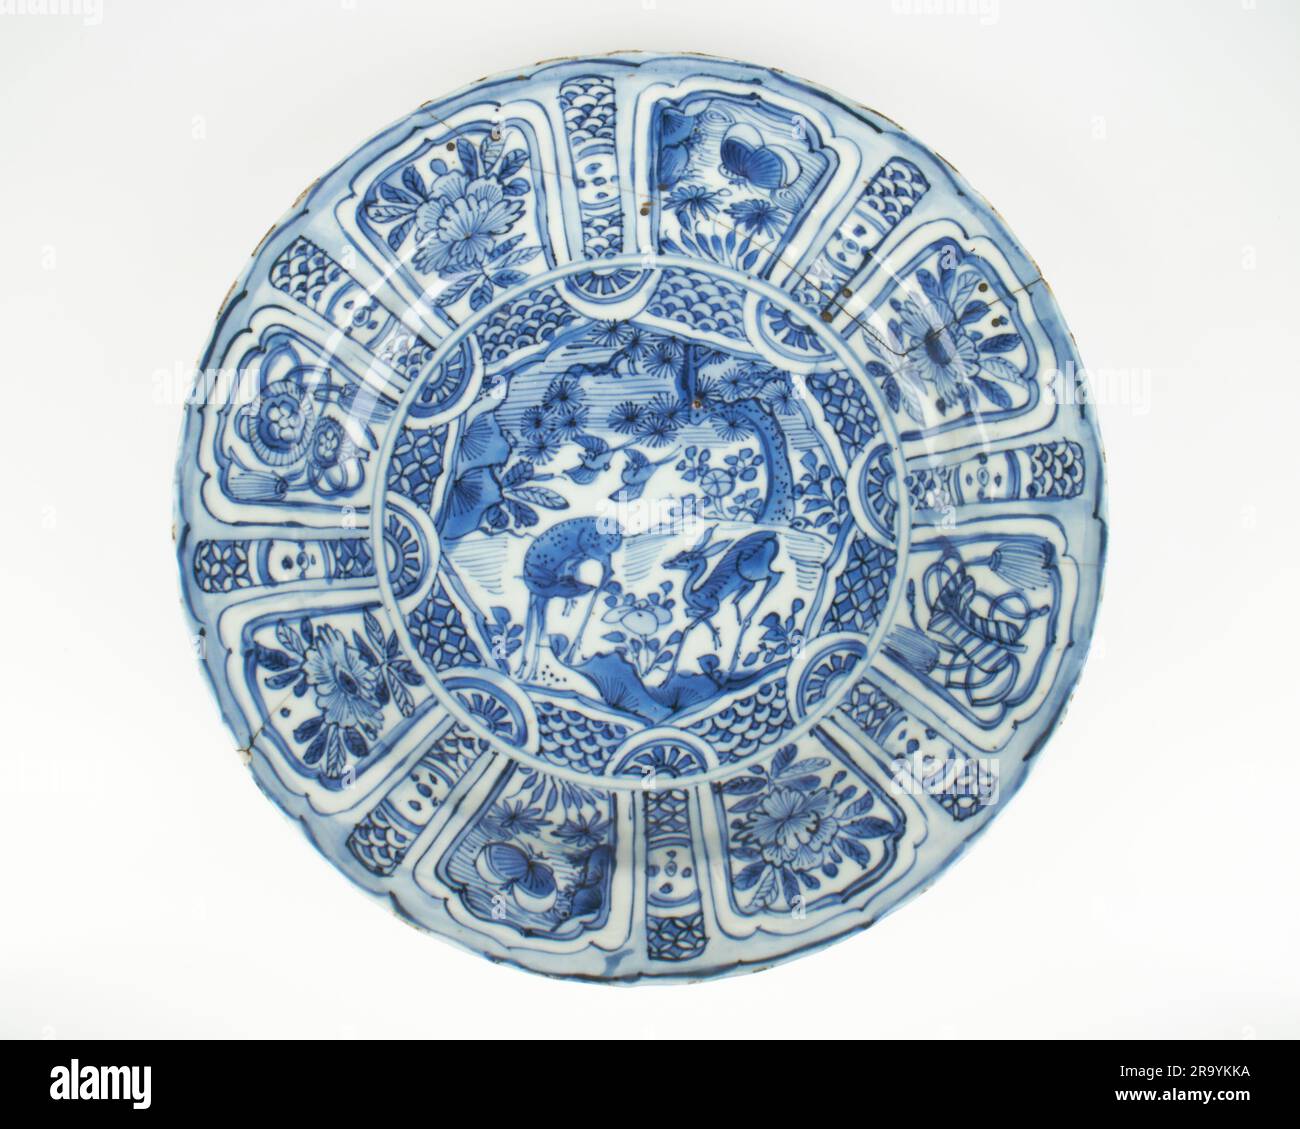 Plat chinois antique en porcelaine Kraak bleue et blanche Banque D'Images